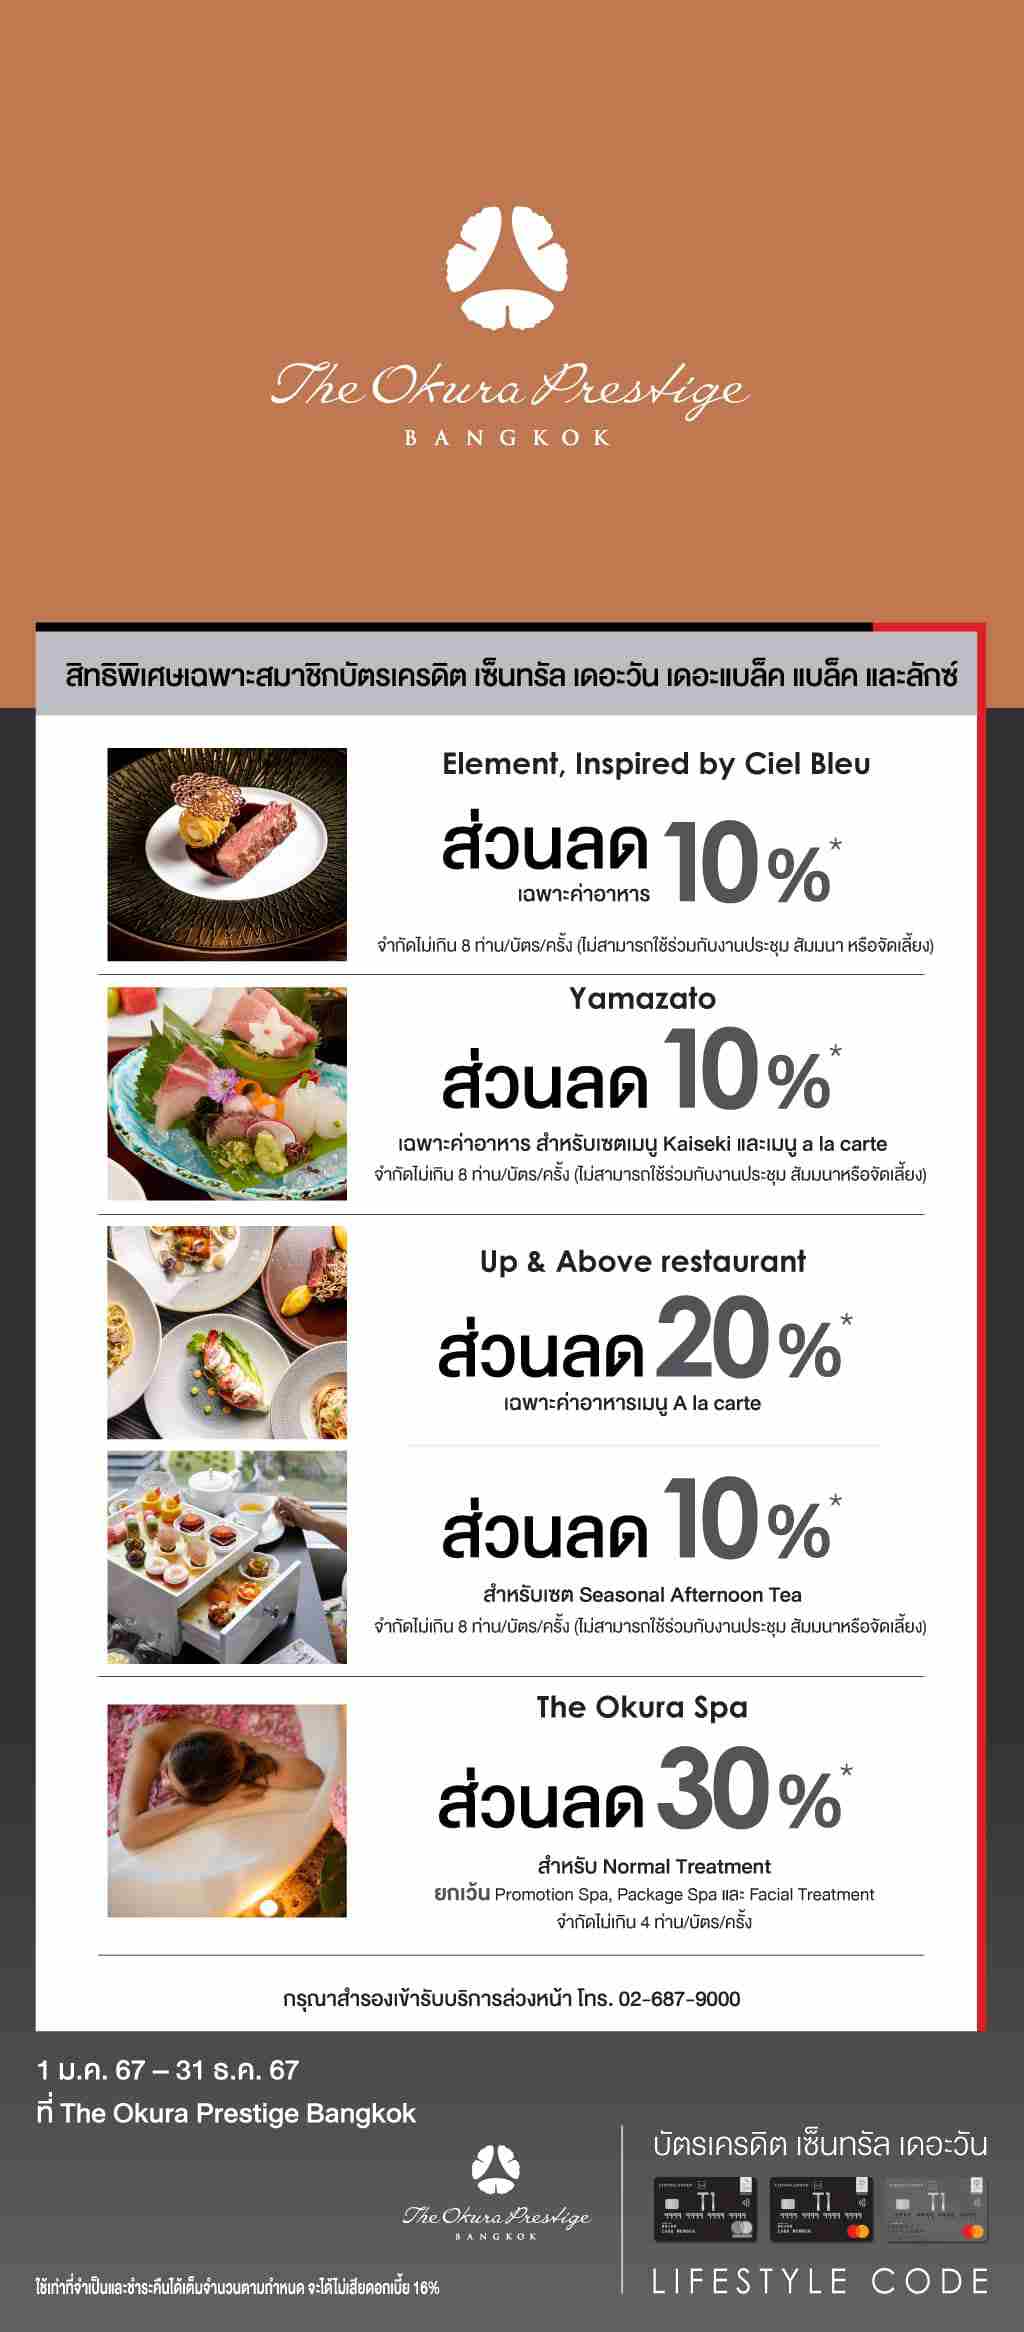 รับส่วนลดสูงสุด 30%* ที่ The Okura Prestige Bangkok  | สมัครบัตรเครดิตออนไลน์ | สิทธิประโยชน์บัตรเครดิต | บัตรเครดิต ผ่อน 0% | บัตรเครดิต ใช้ต่างประเทศ | บัตรเครดิต ท่องเที่ยว | สินเชื่อส่วนบุคคล